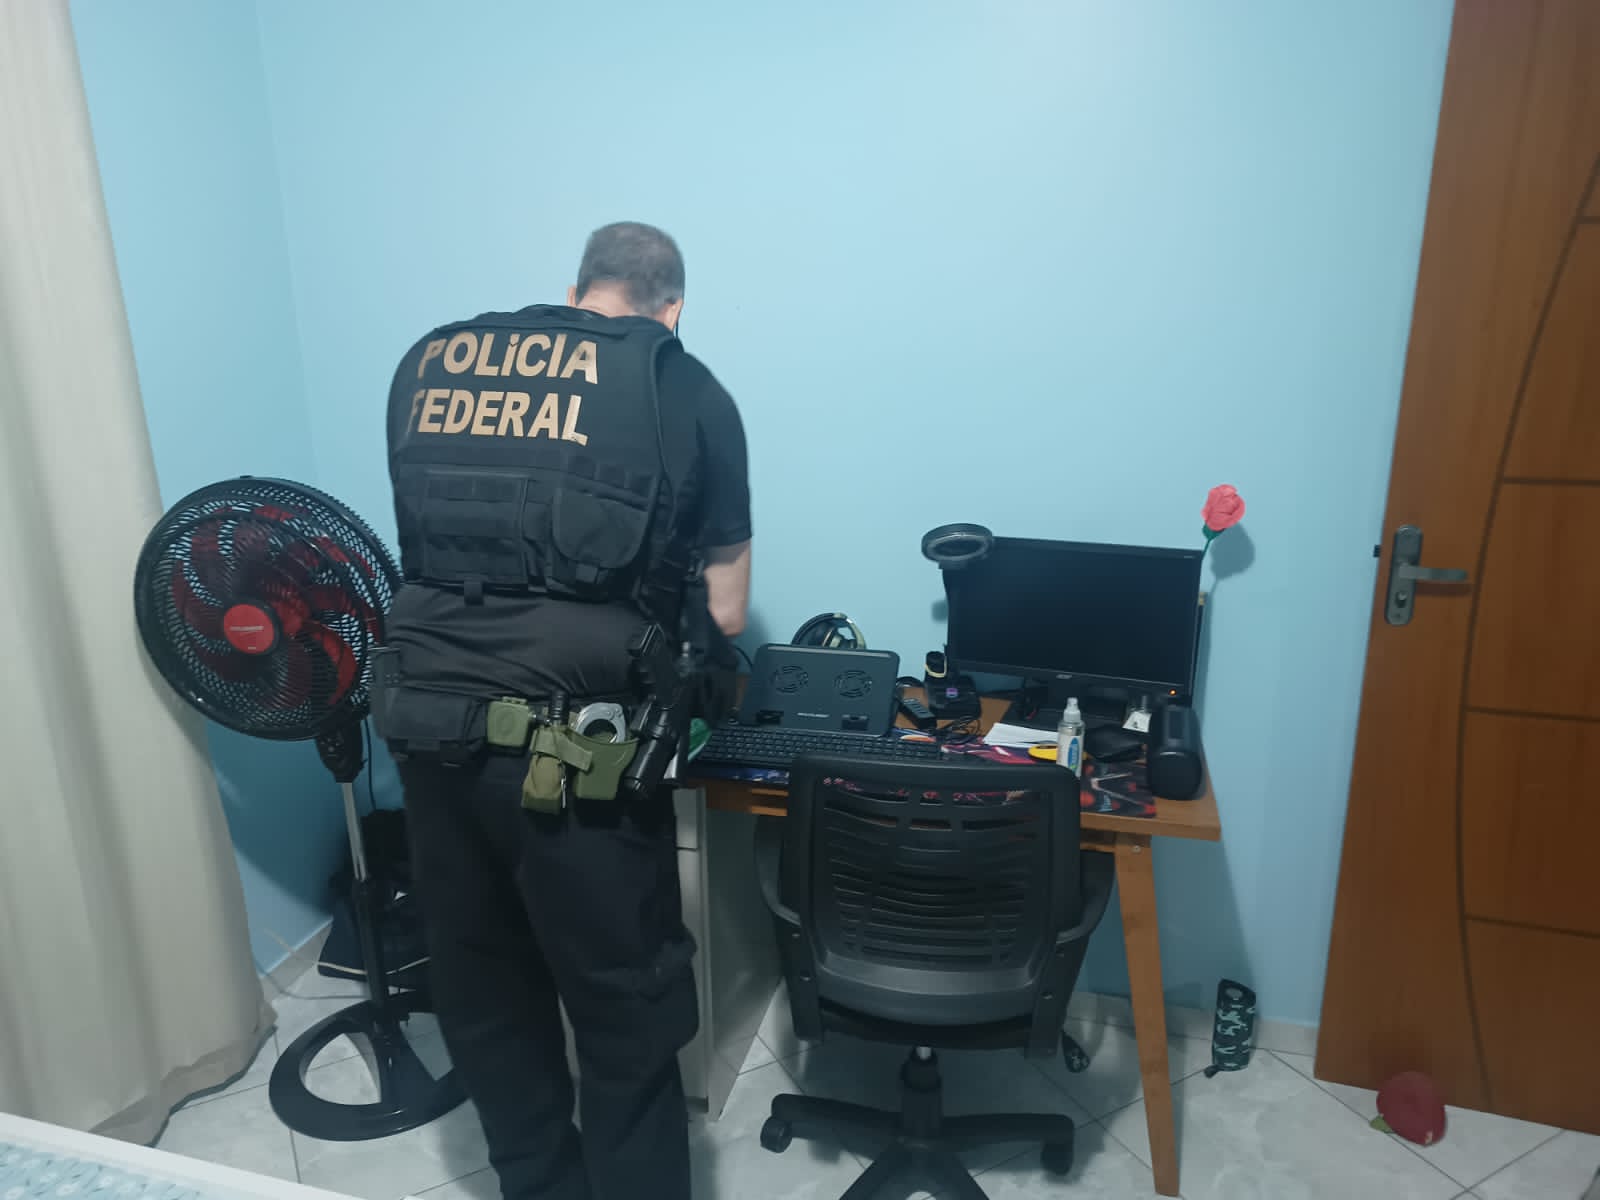 Polícia Federal detalhou que foram apreendidos equipamentos de informática na residência do suspeito ao cumprir mandados de busca e apreensão nos bairros Cidade Pomar e Civit II